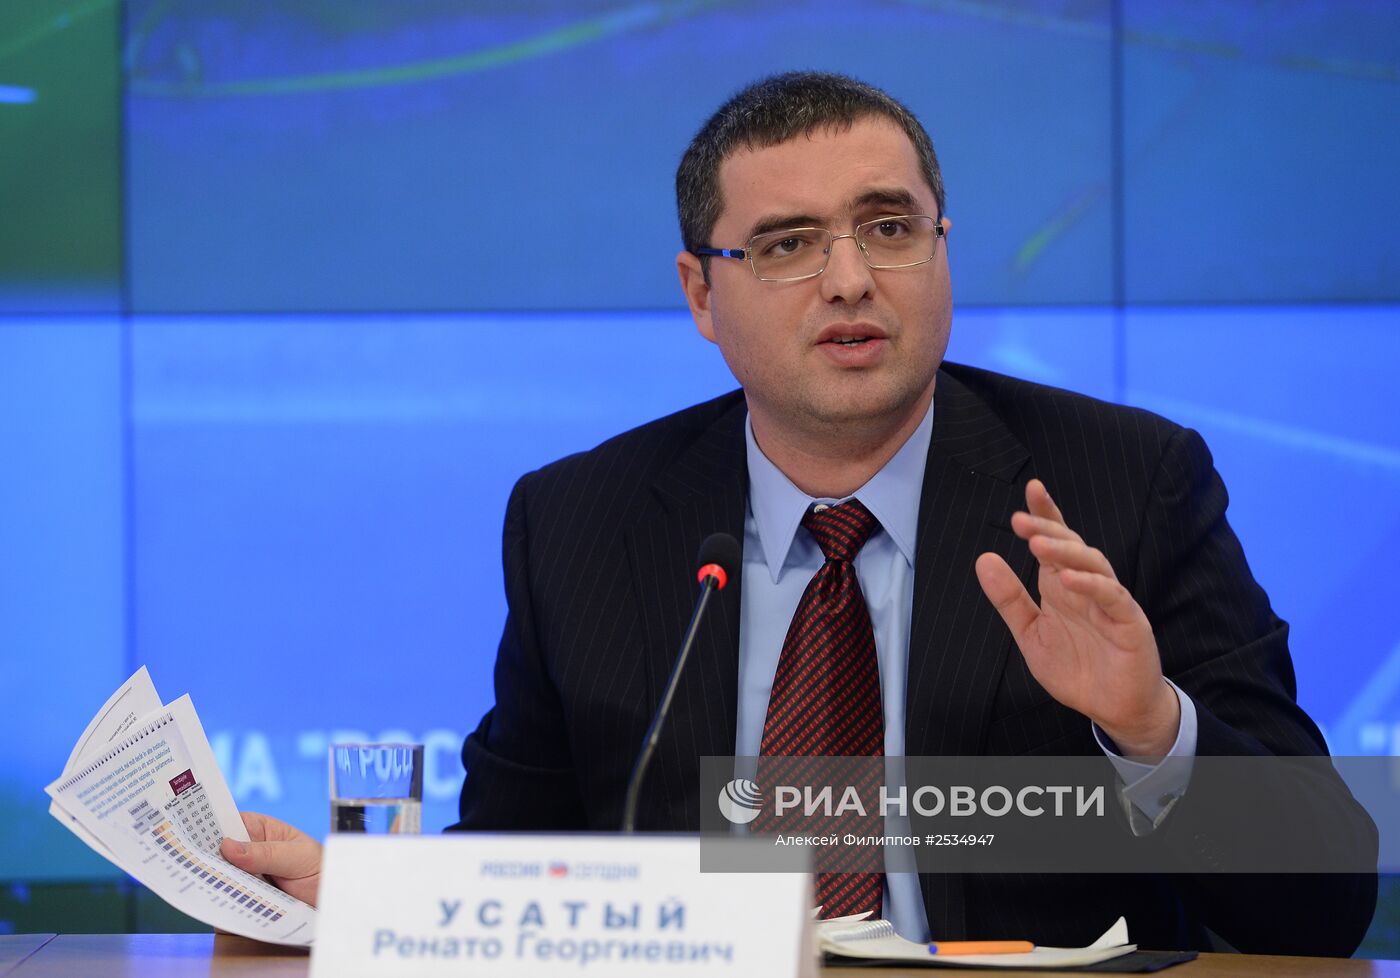 Пресс-конференция лидера молдавской партии "Patria" (Родина) Ренато Усатого